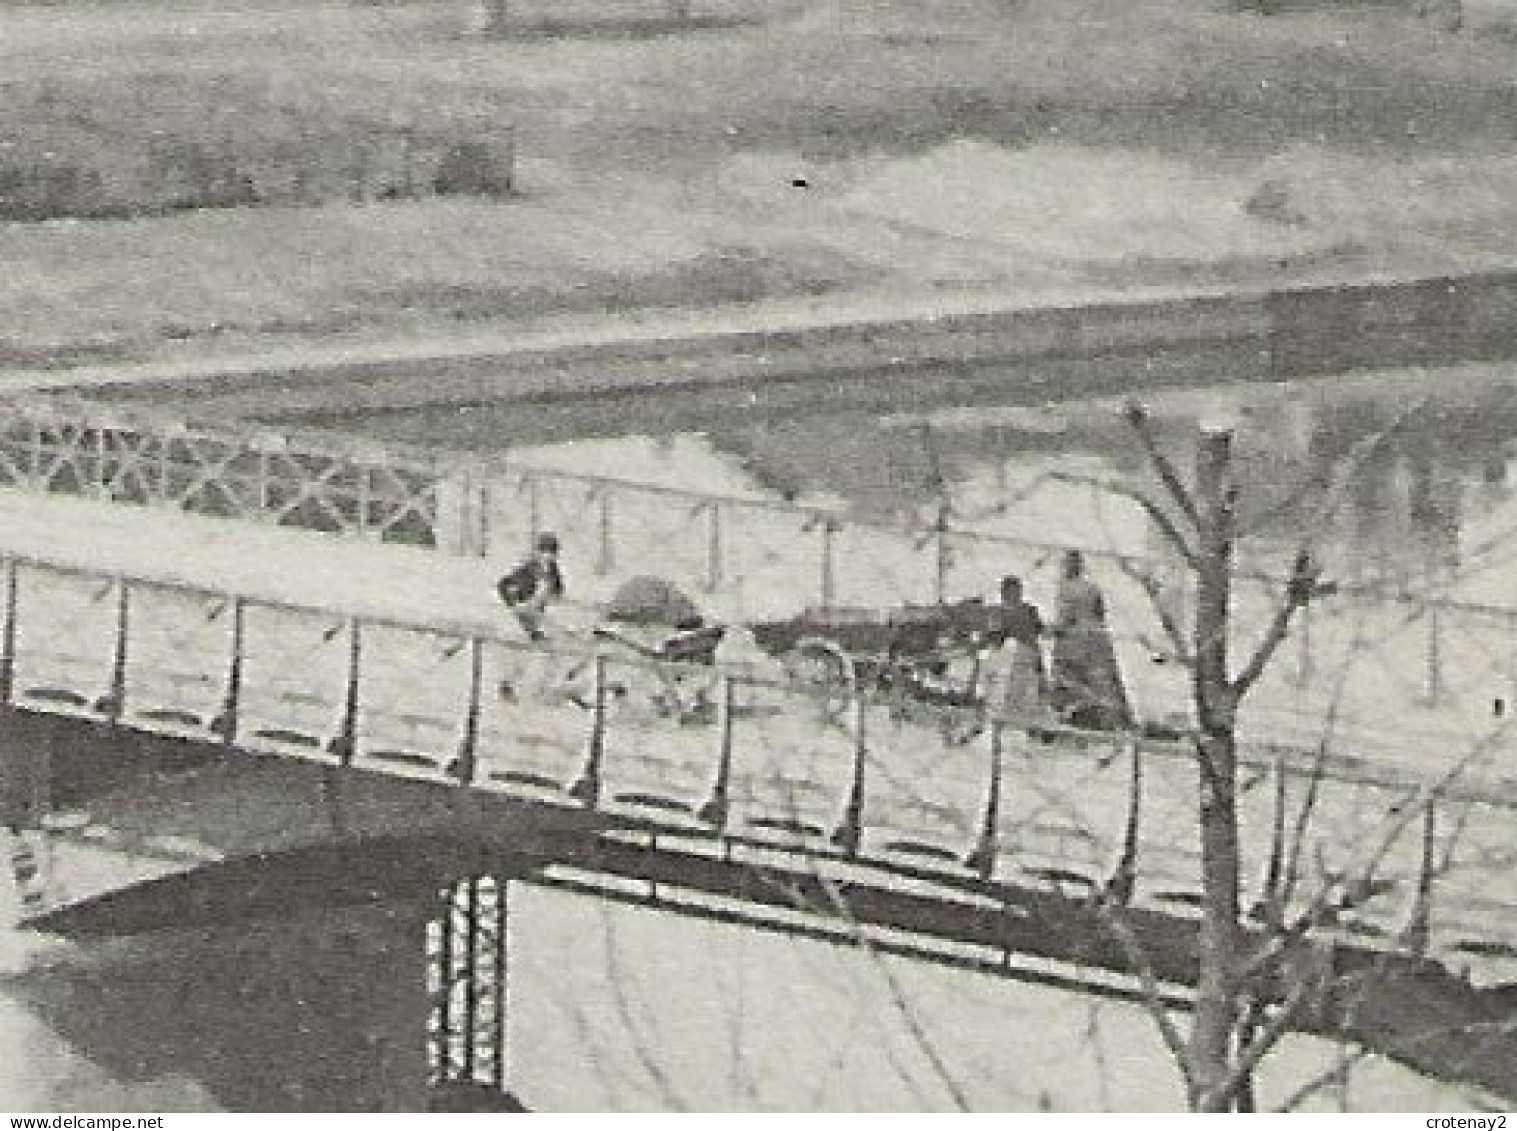 72 LE MANS N°42 Pont De Fer Sur La Sarthe En 1916 Cheminée VOIR ZOOM Personnages Et Charrettes Sur Le Pont - Le Mans